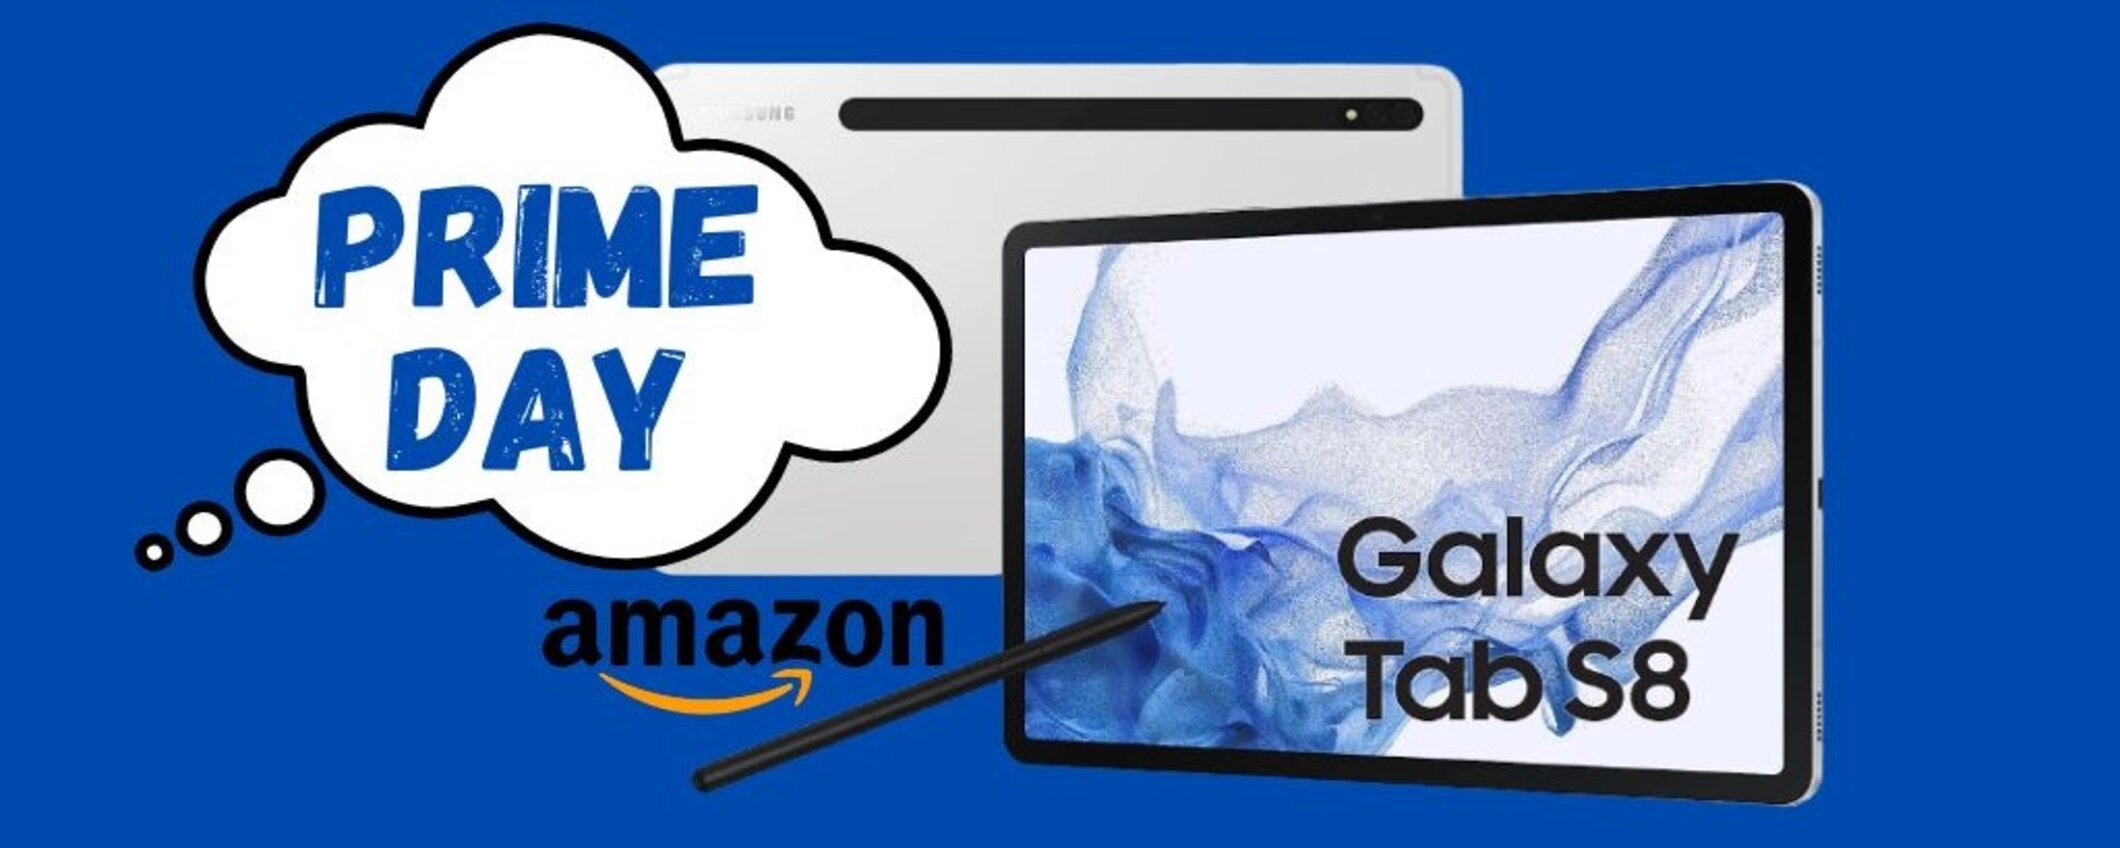 Oferta Prime Day para el increíble Samsung Galaxy Tab S8